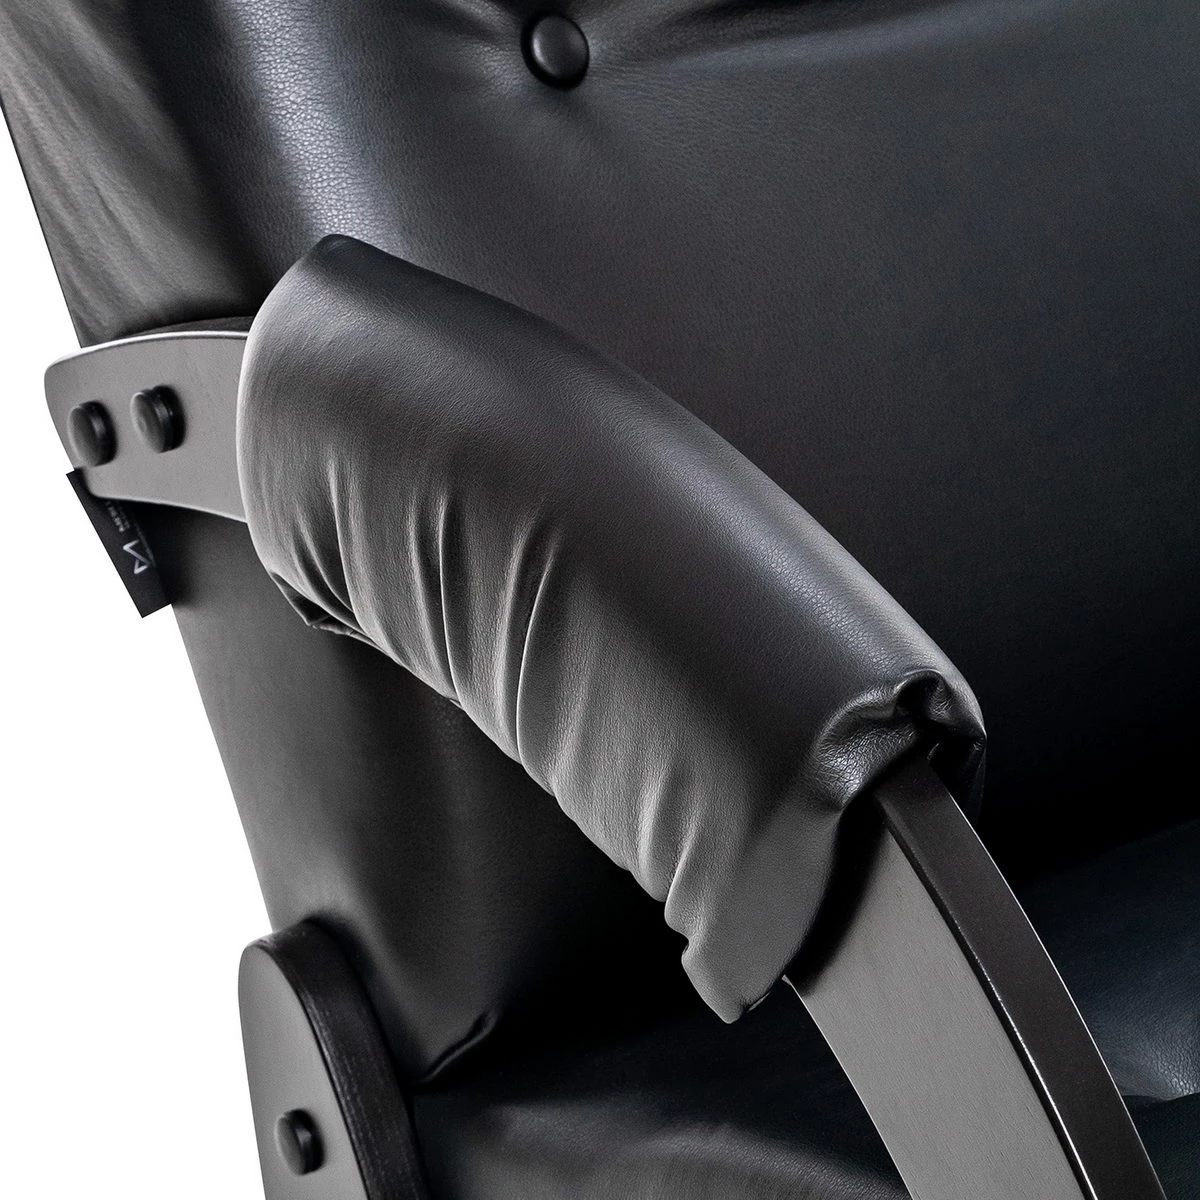 Кресло для отдыха Модель 61 (Импэкс). Цвет каркаса: Венге; Цвет обивки: Eva 6